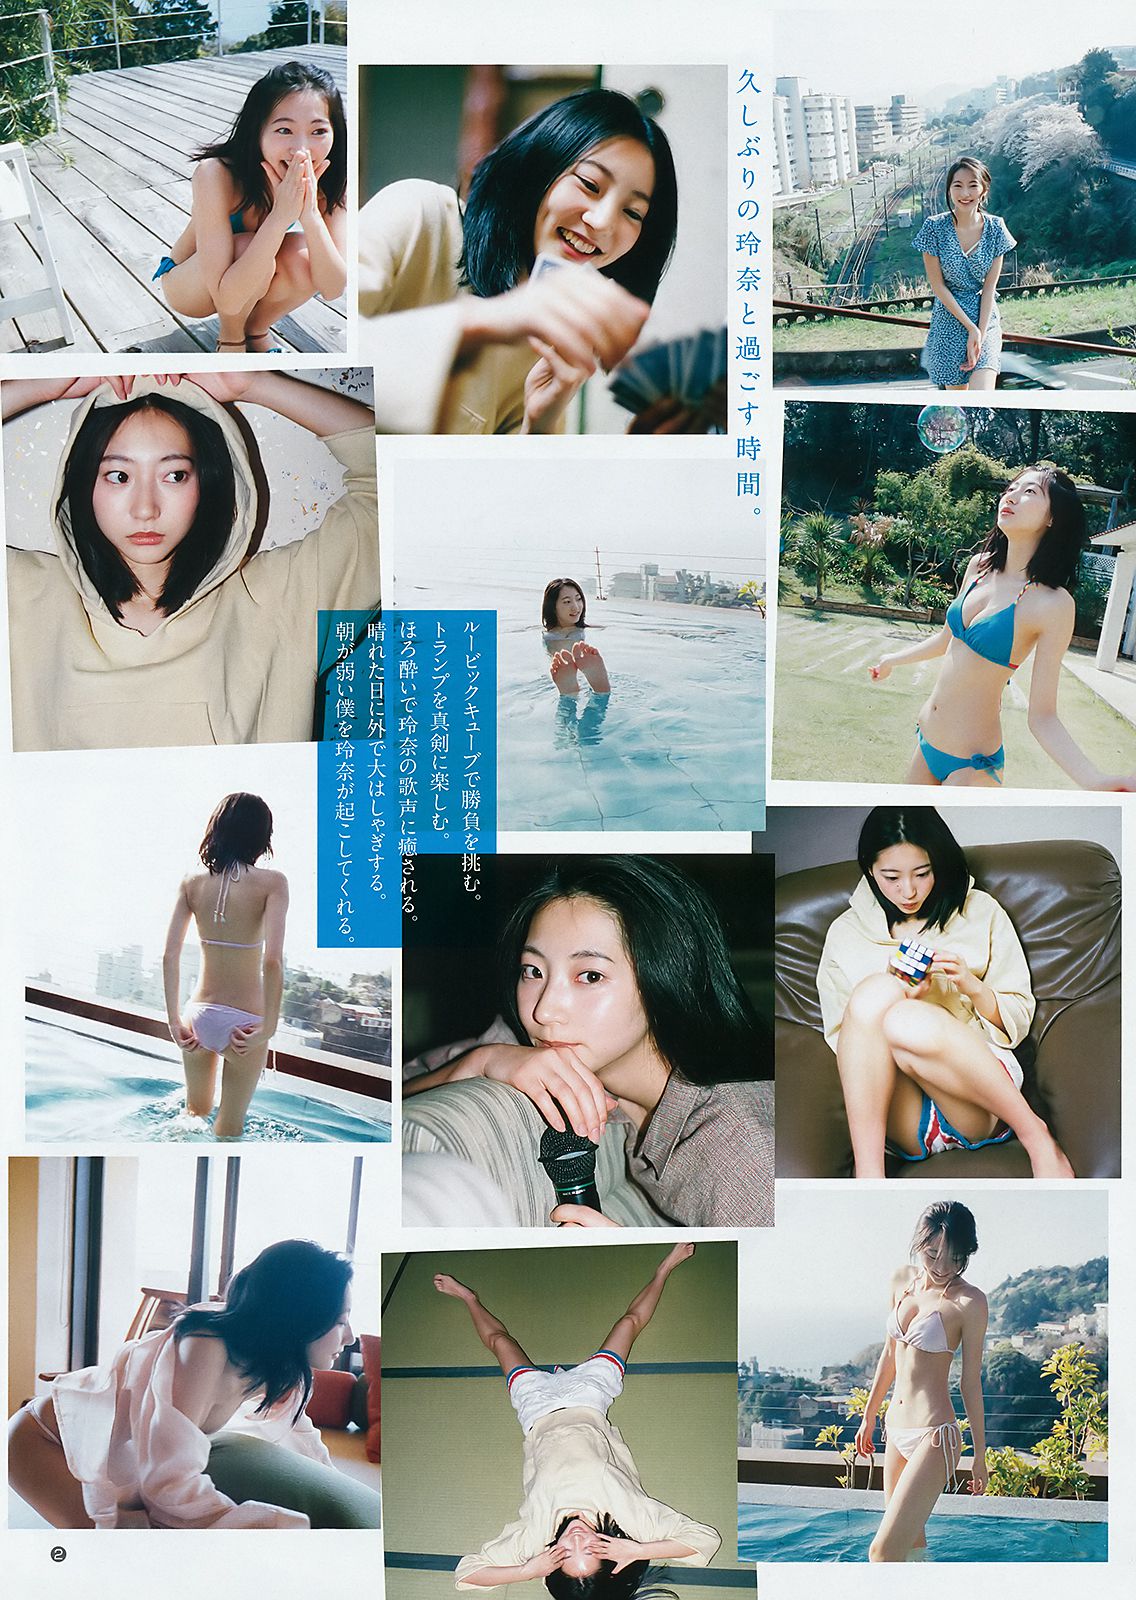 Rena Takeda Kasumi Arimura Rikako Aida [Weekly Young Jump] 2018 No.21-22 Photograph Page 1 No.0cd81e